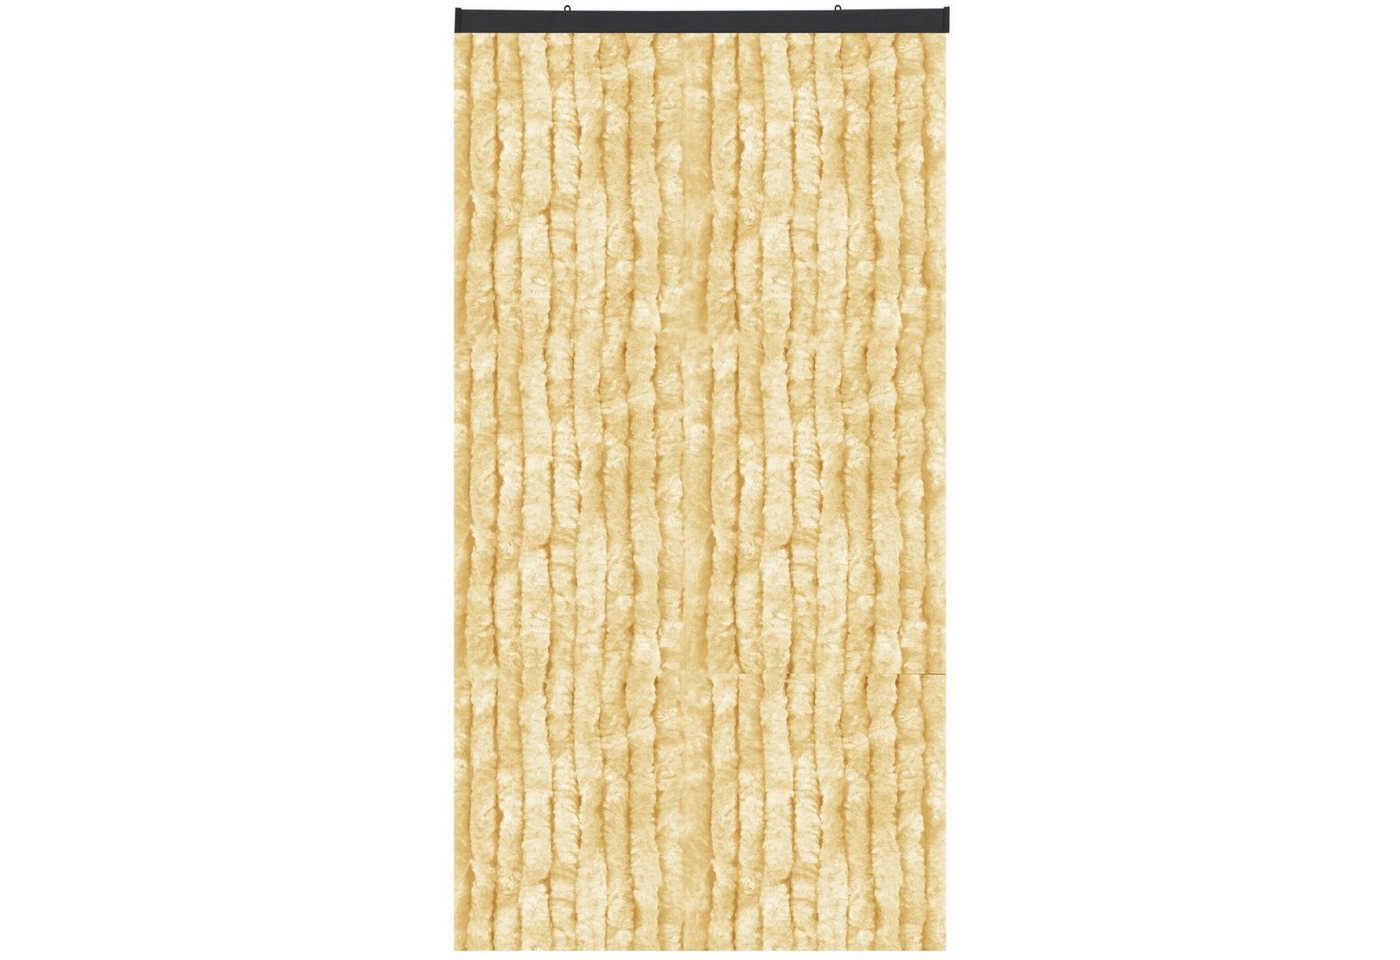 Türvorhang Flauschi, Arsvita, Ösen (1 St), Flauschvorhang 160x185 cm in Unistreifen beige, viele Farben von Arsvita